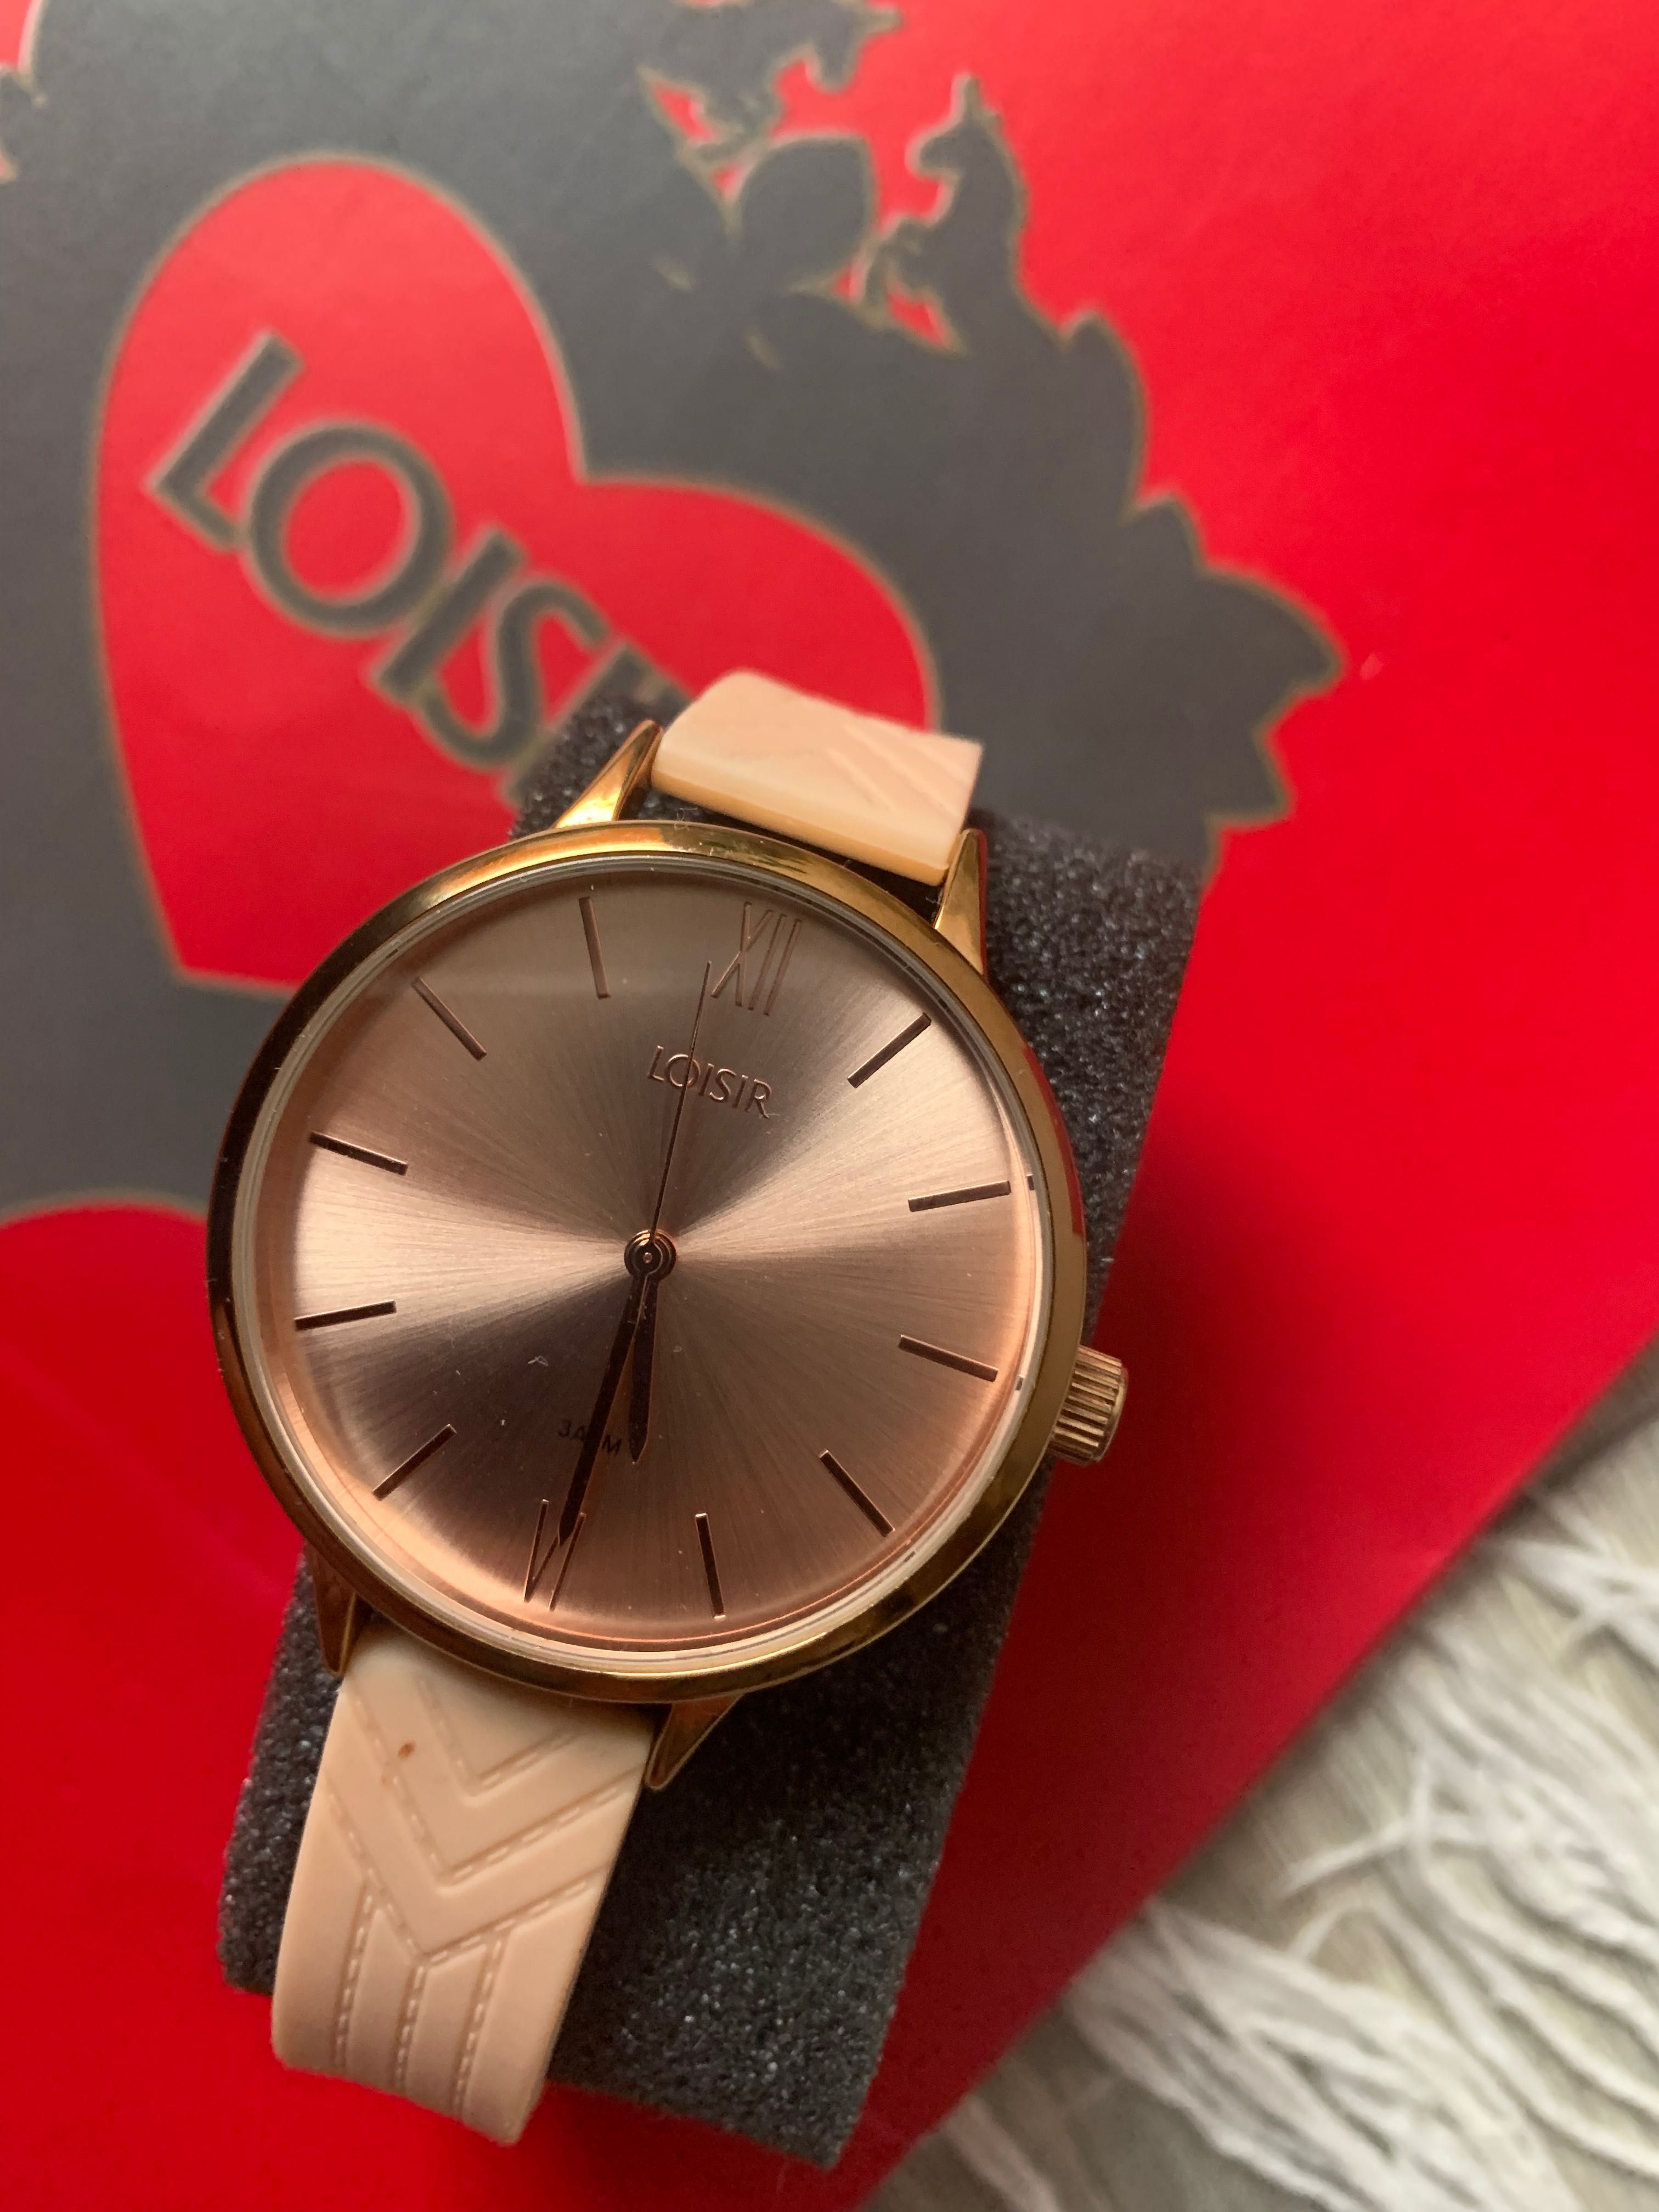 Loisir by Oxette дамски часовник